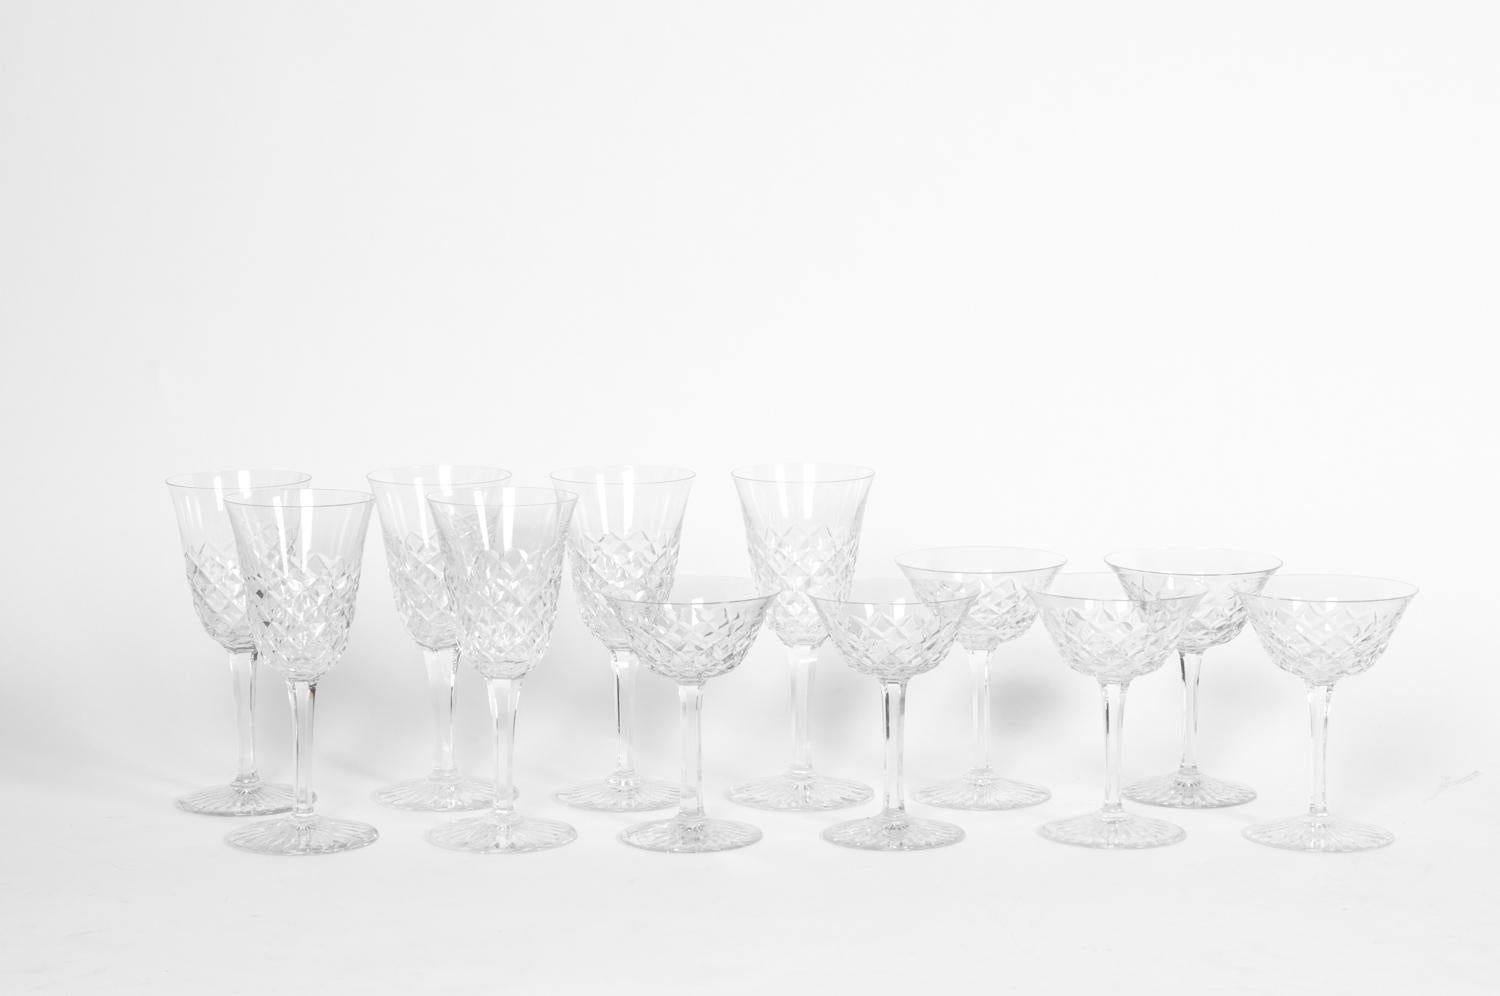 French Vintage Baccarat Crystal Glassware Set